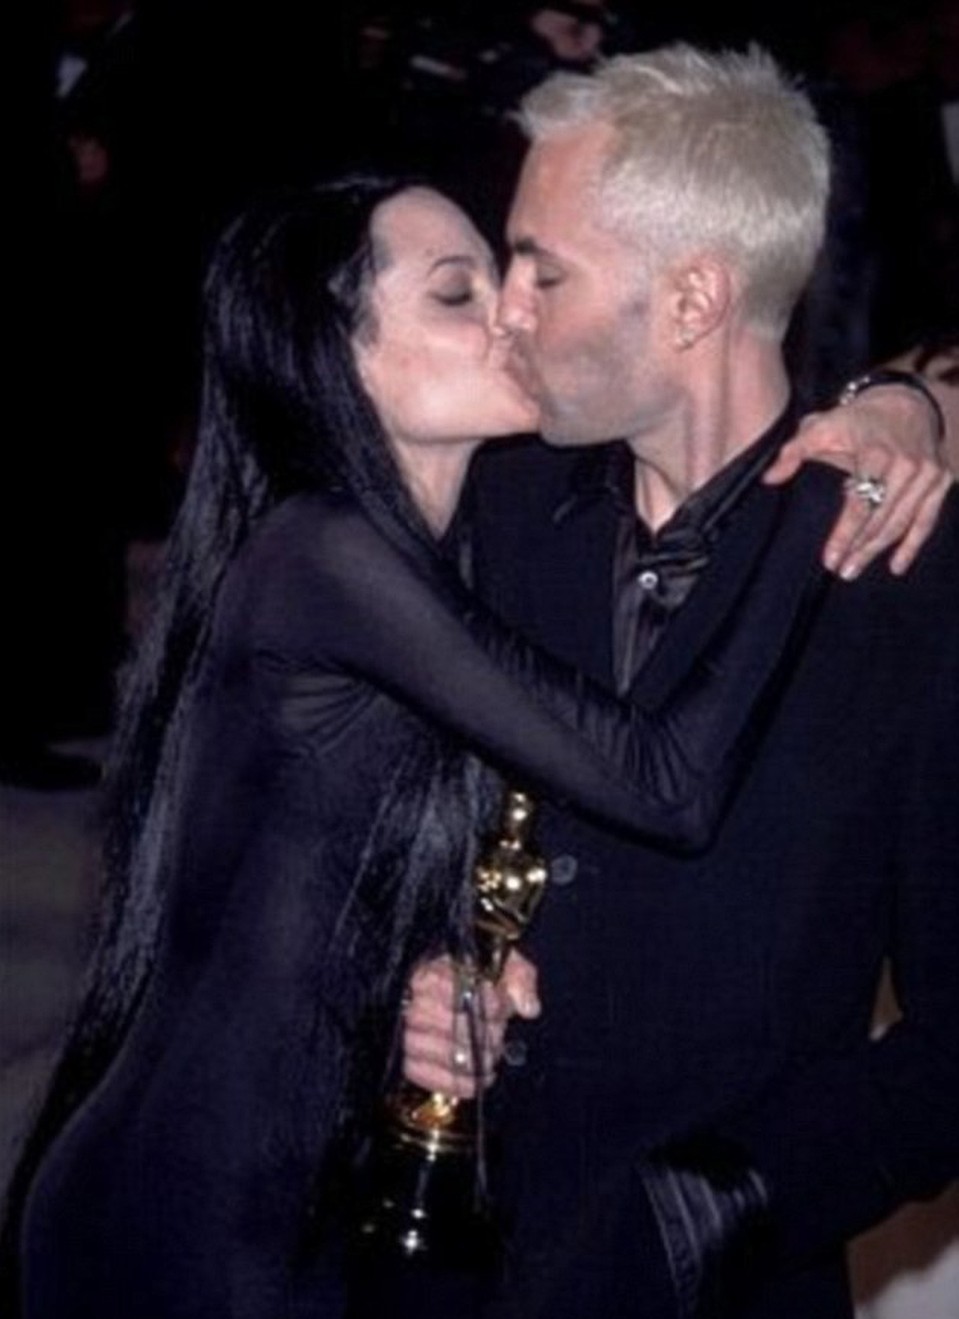 Поцелуй Анджелины с братом Джеймсом во время "Оскара" смутил многих. Фото: SPLASH NEWS